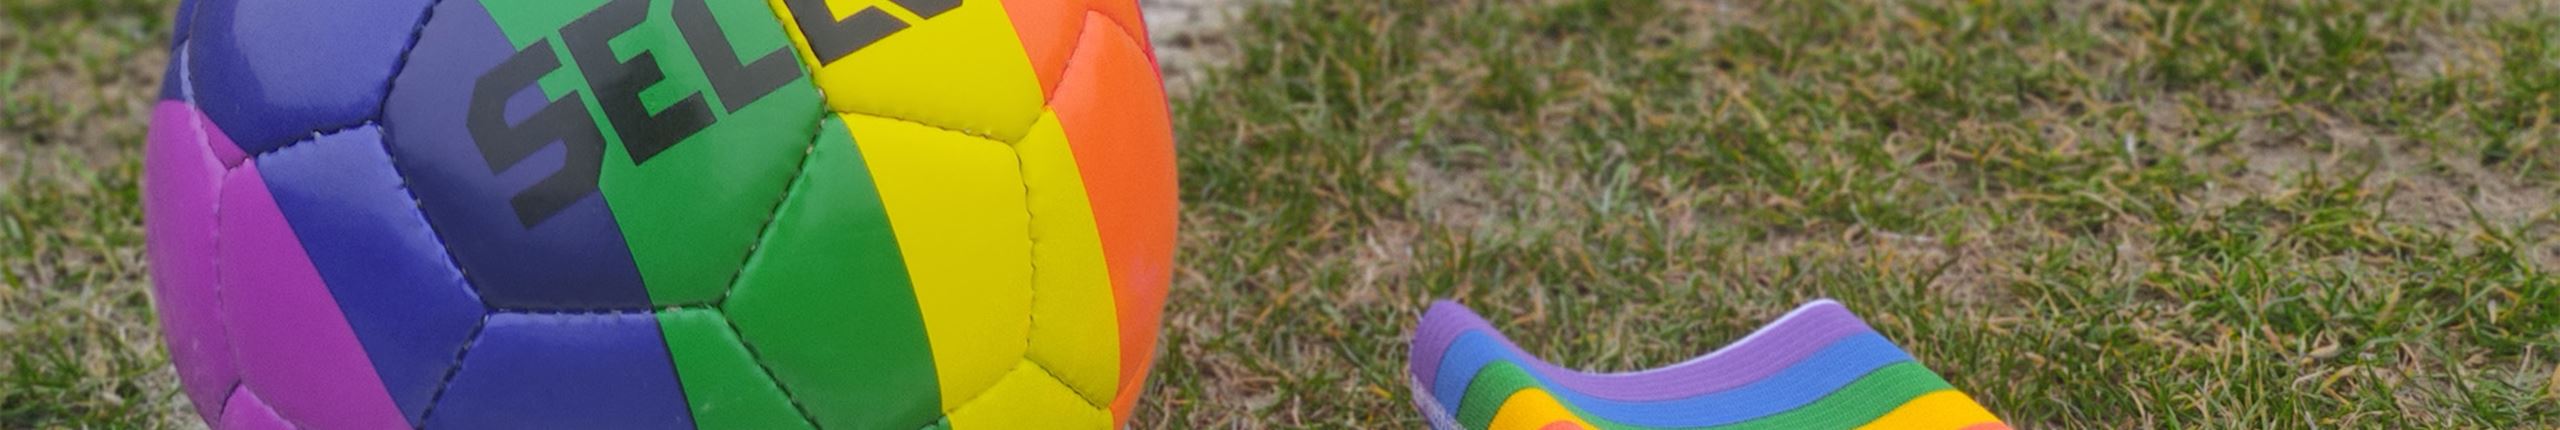 Regnbuefodbold og anførerbind.jpg